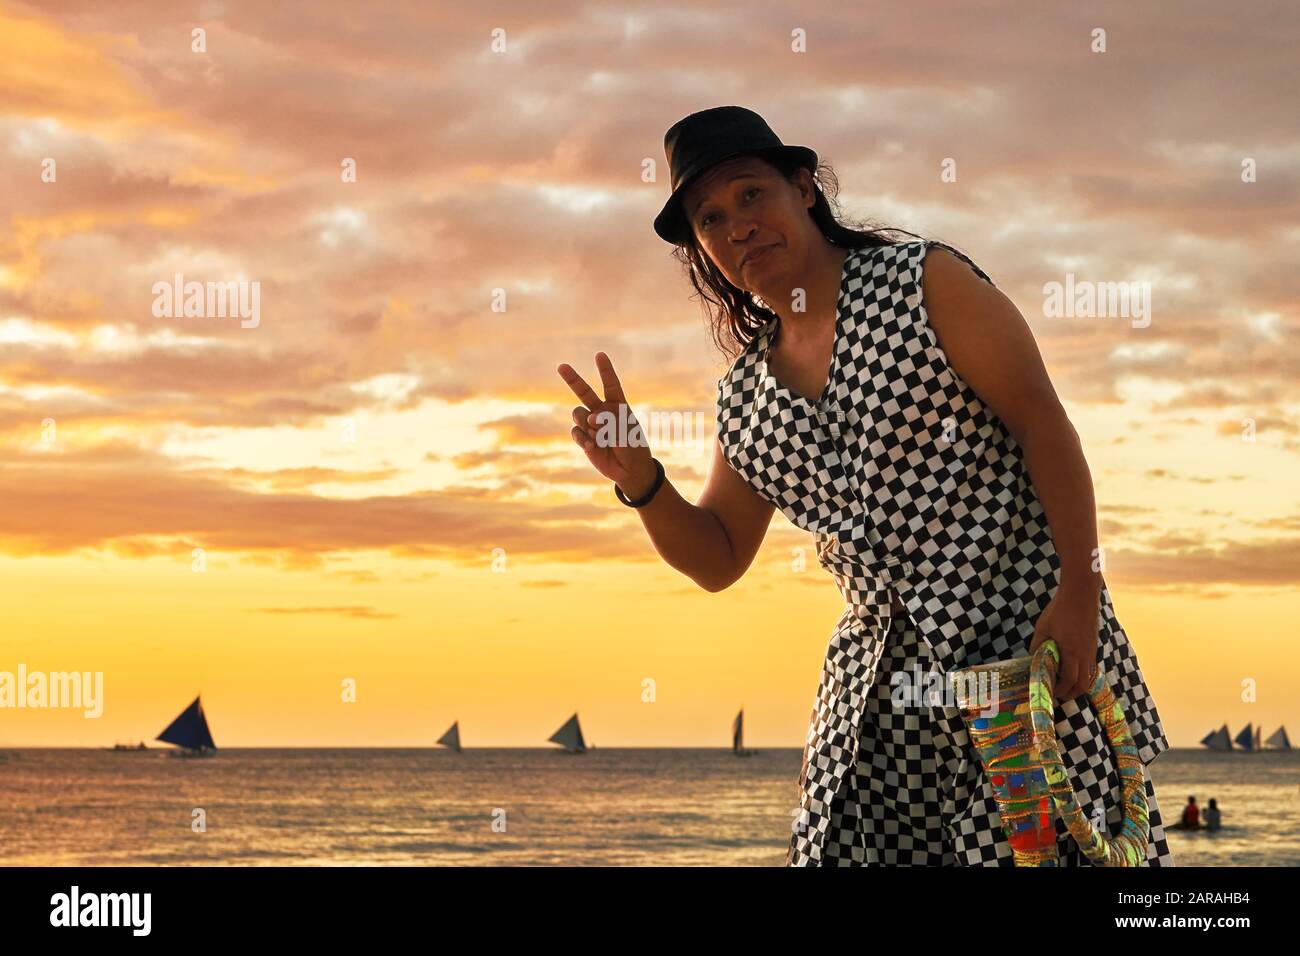 Boracay, Aklan, Philippinen - 1. Januar 2020: Mann auf Stelzen, der bei Sonnenuntergang am weißen Strand jongliert und ein Friedenszeichen für die Kamera gibt Stockfoto